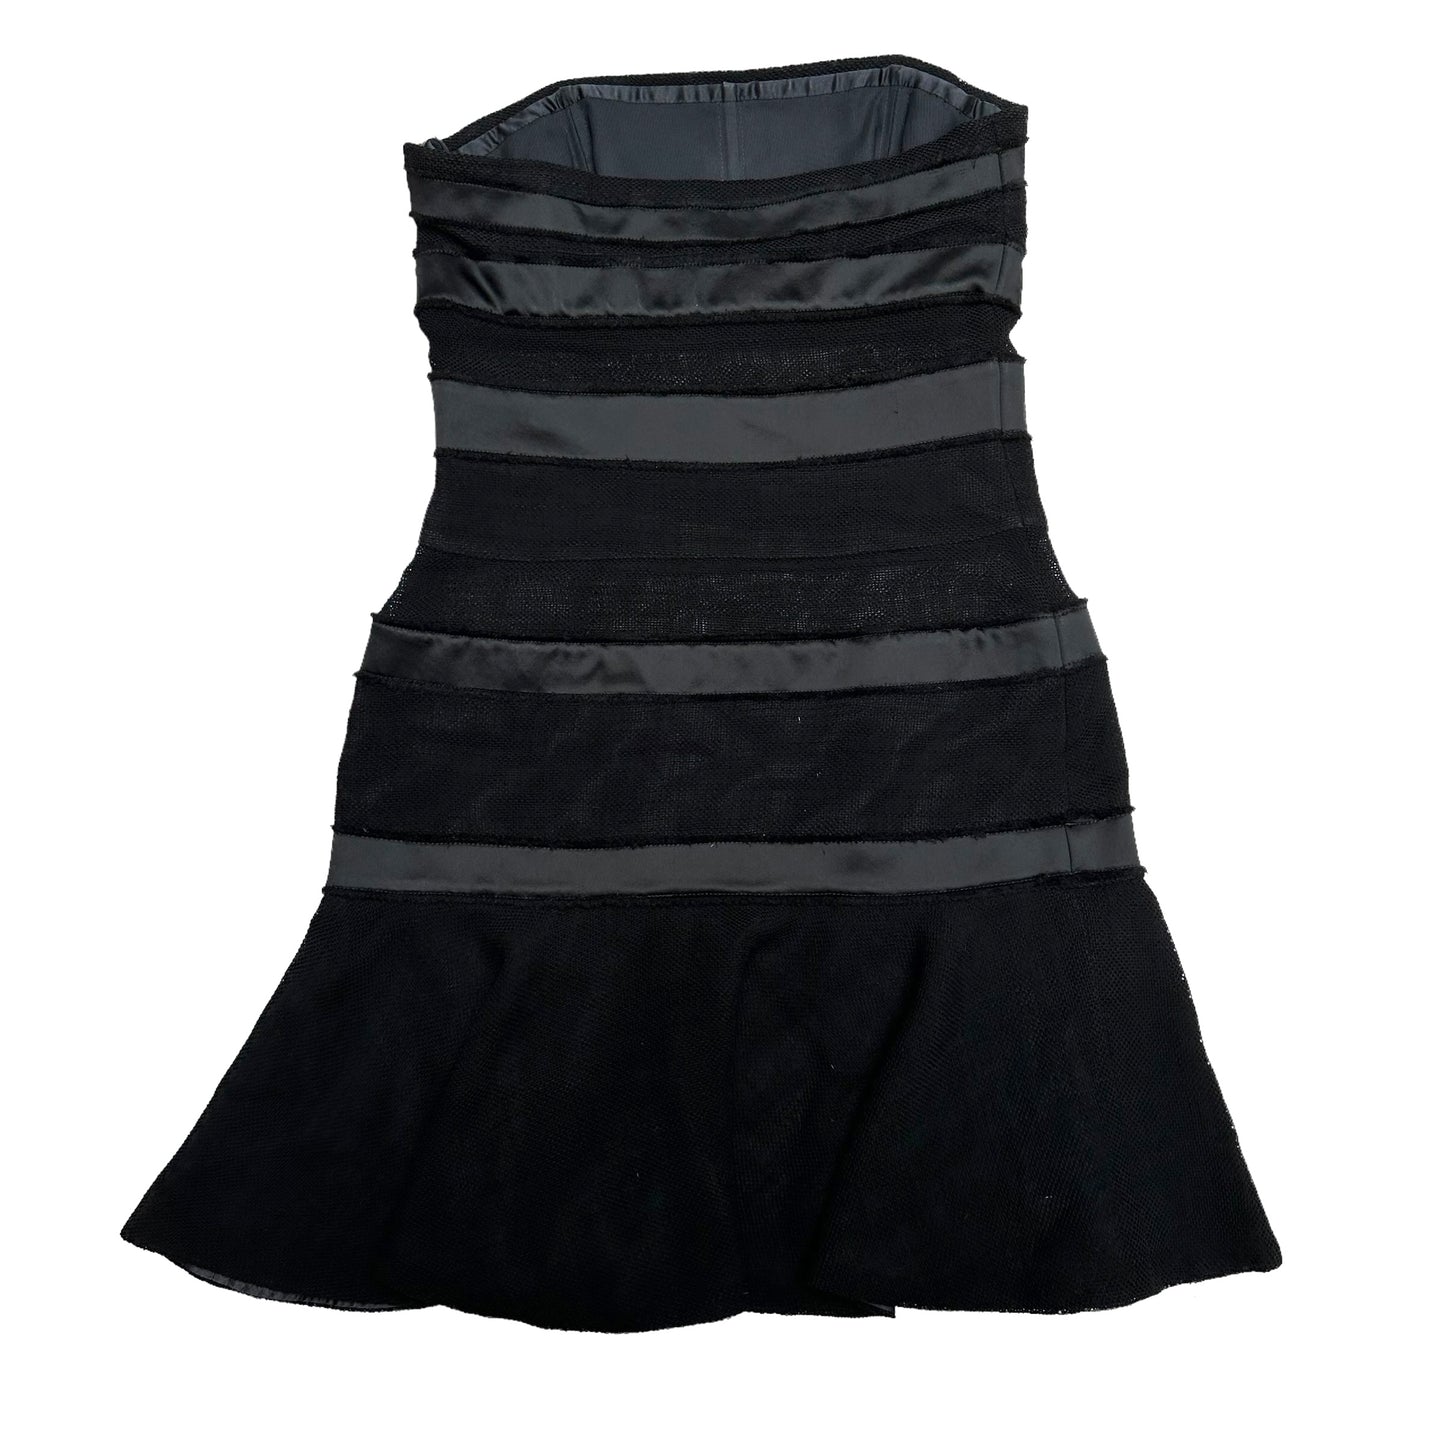 Black Bustier Dress - XS